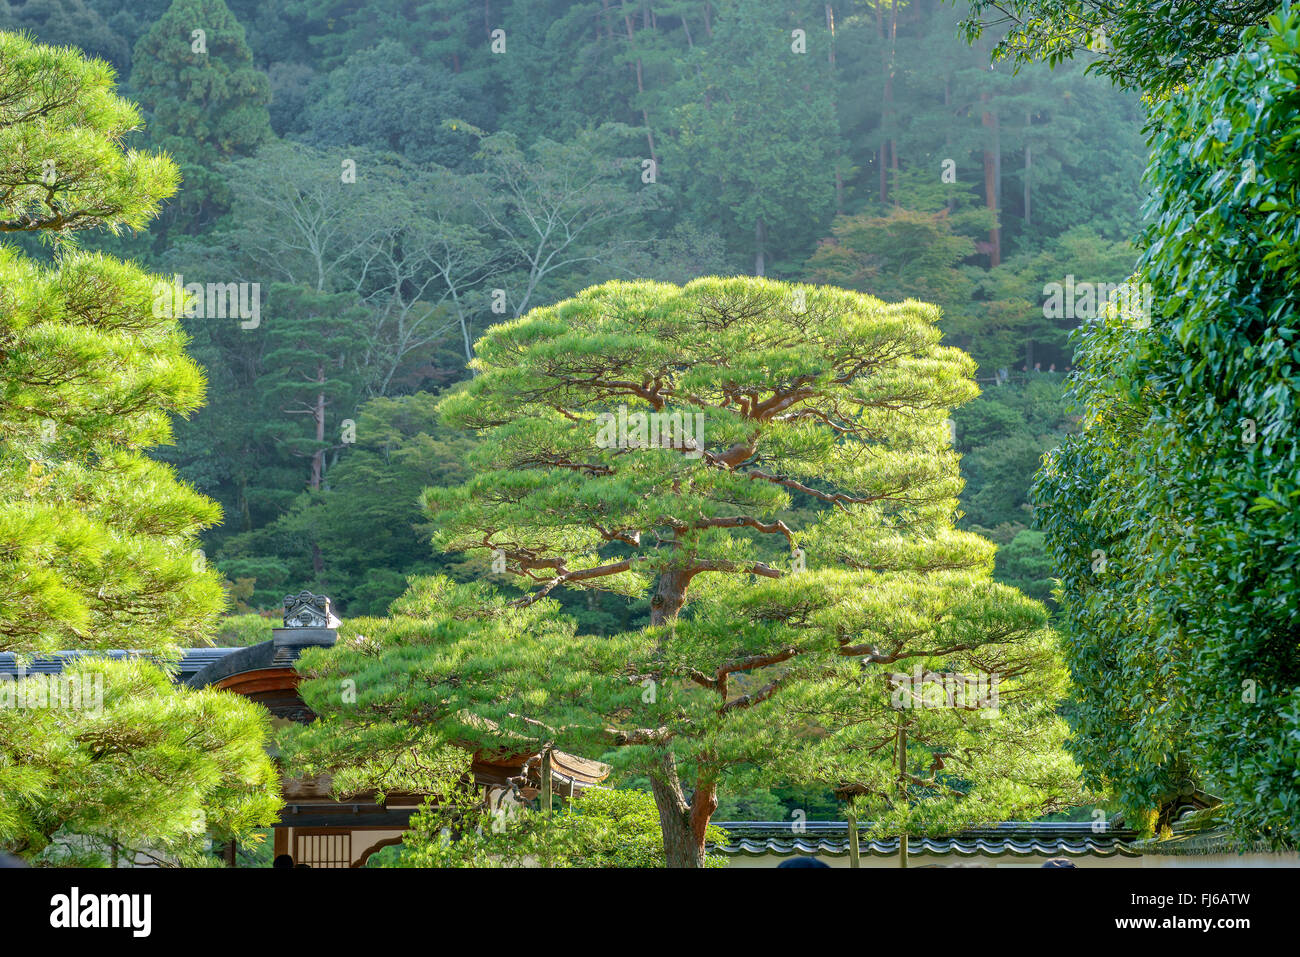 Japanese red pine (Pinus densiflora), Japan, Honshu, Kyoto Stock Photo